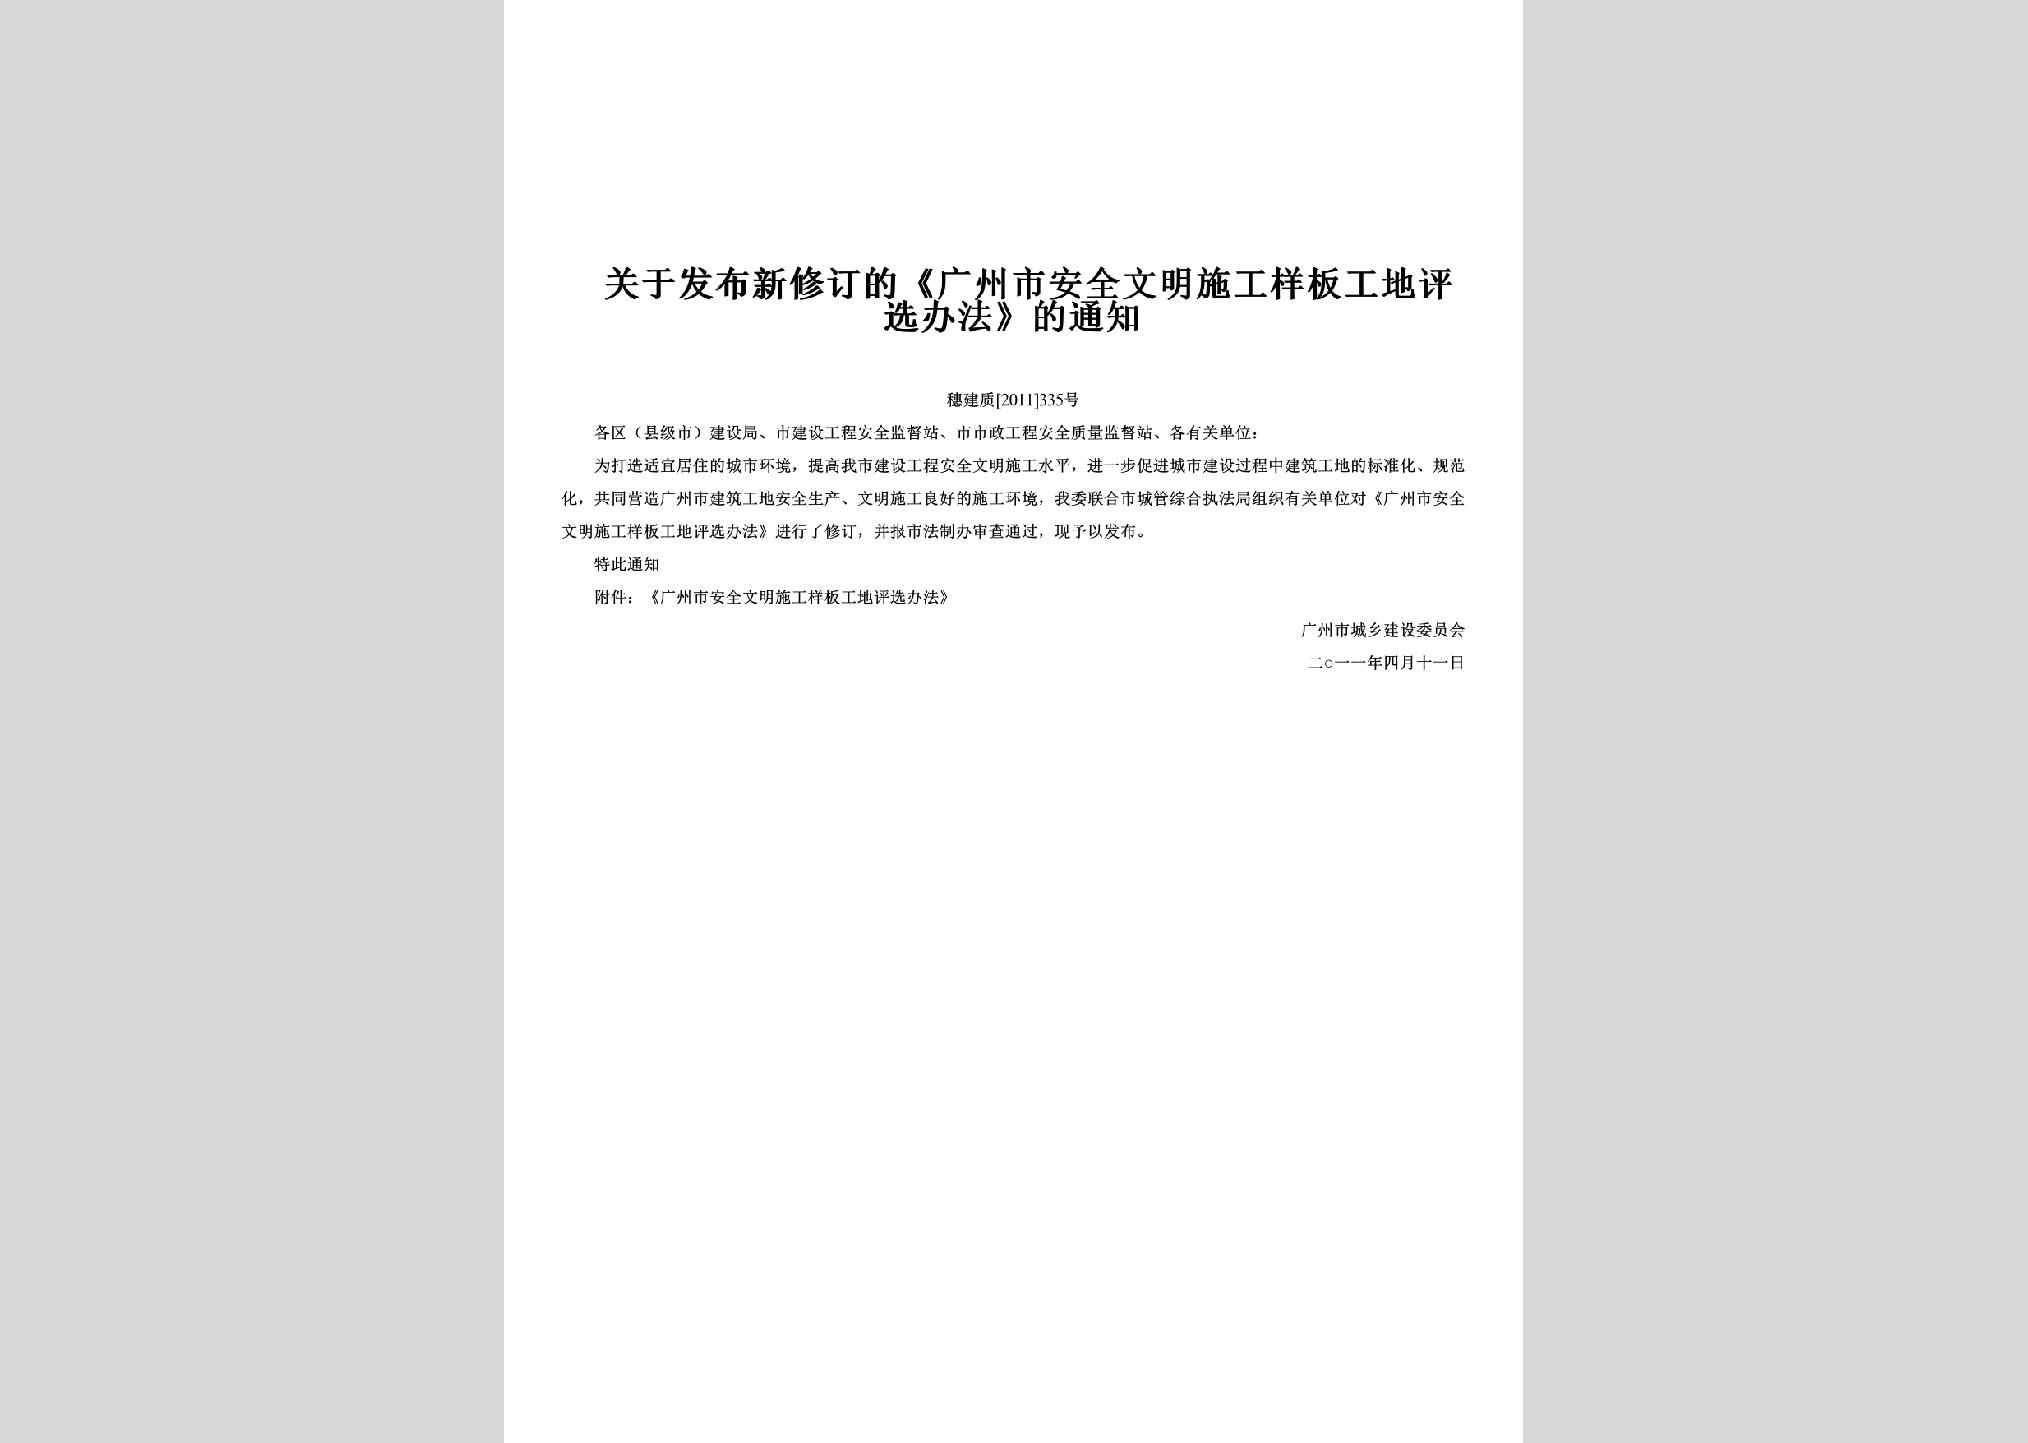 穗建质[2011]335号：关于发布新修订的《广州市安全文明施工样板工地评选办法》的通知